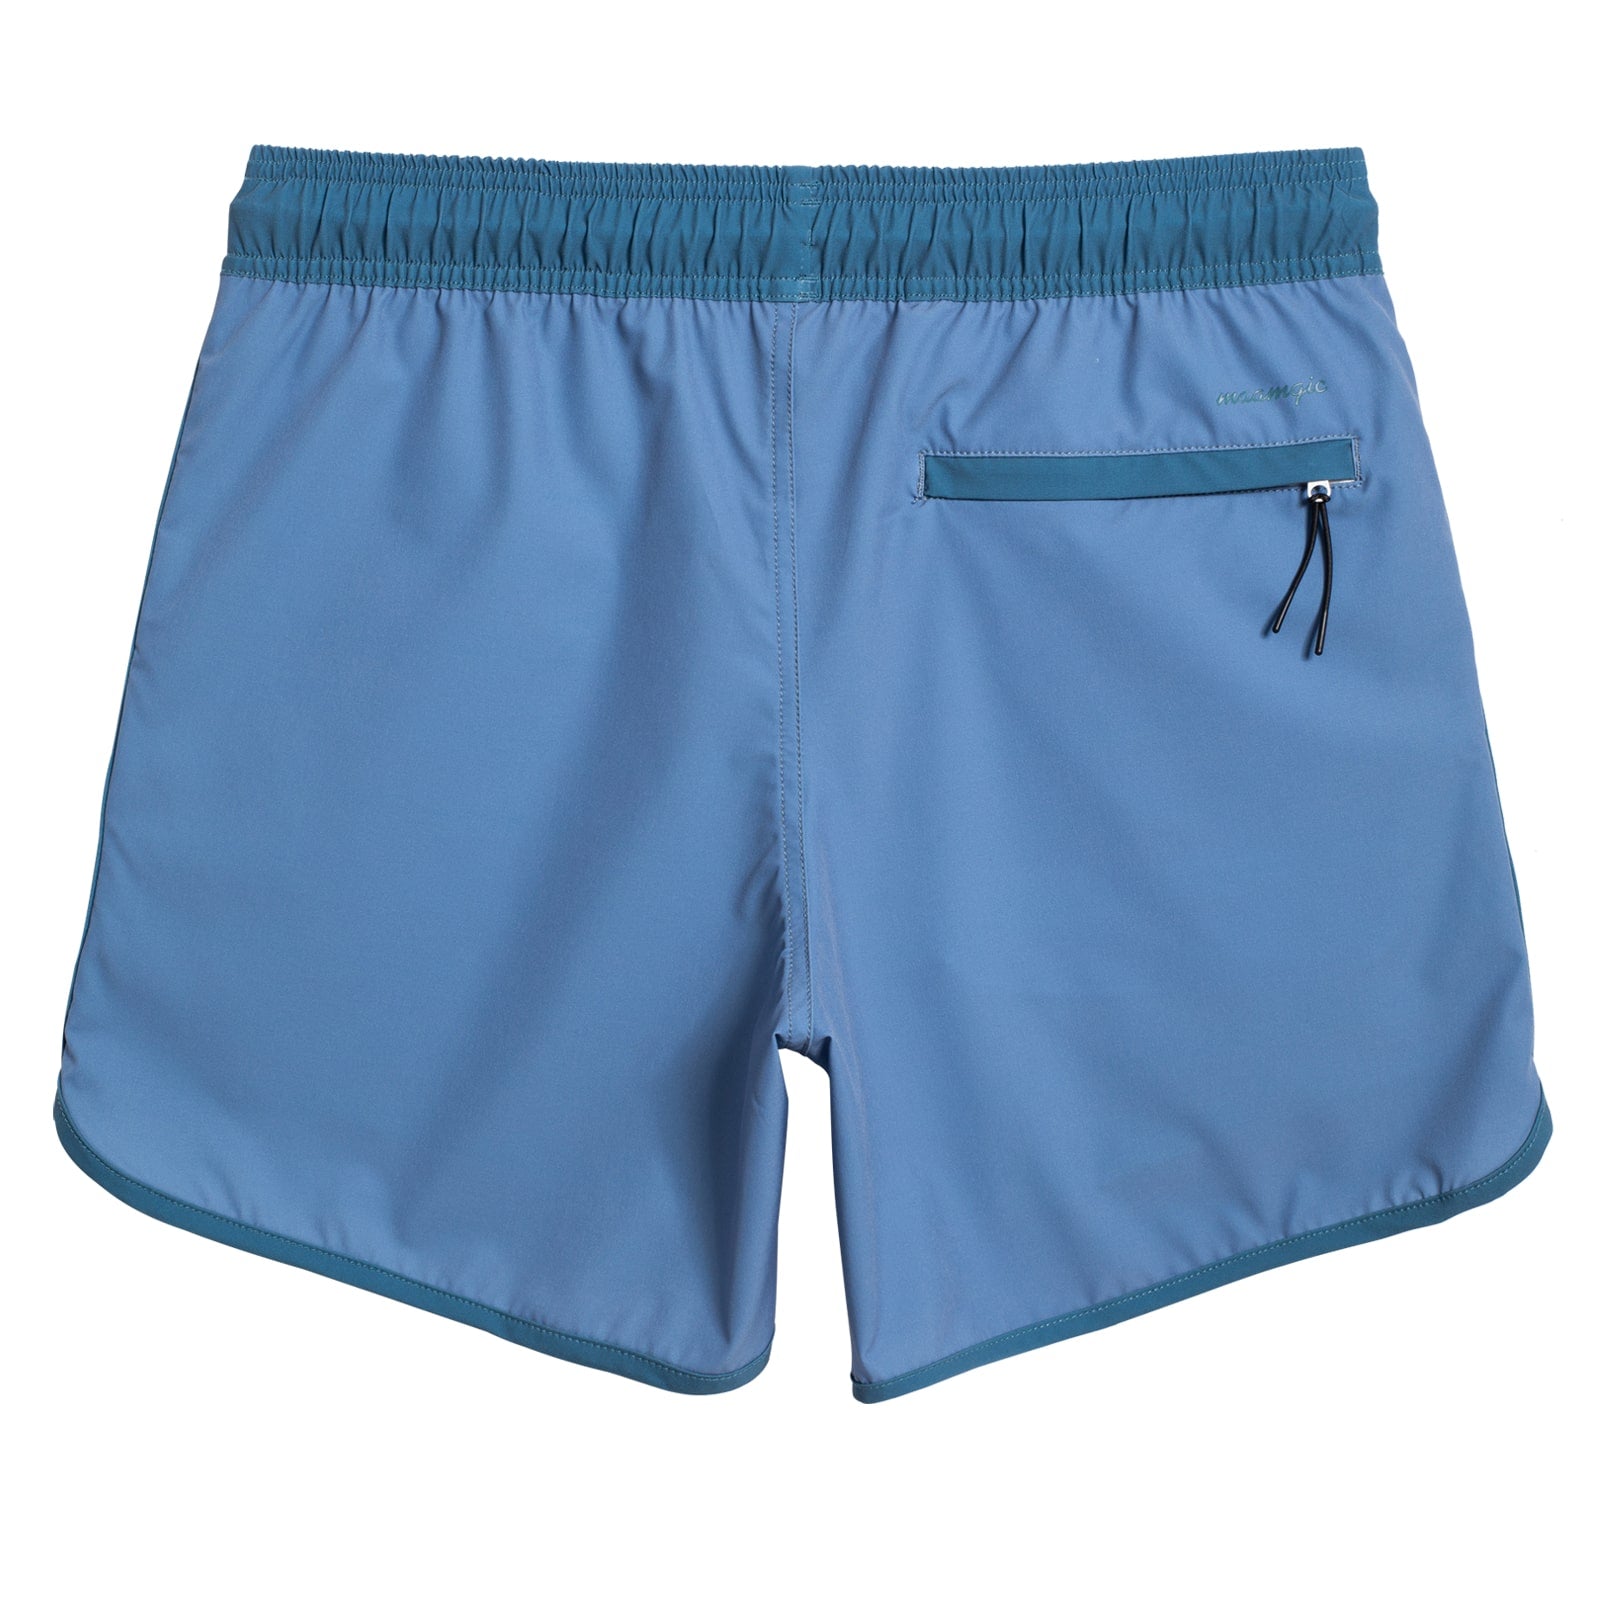 5.5 Inch Inseam Stretch Blue Athletic Gym Shorts – maamgic